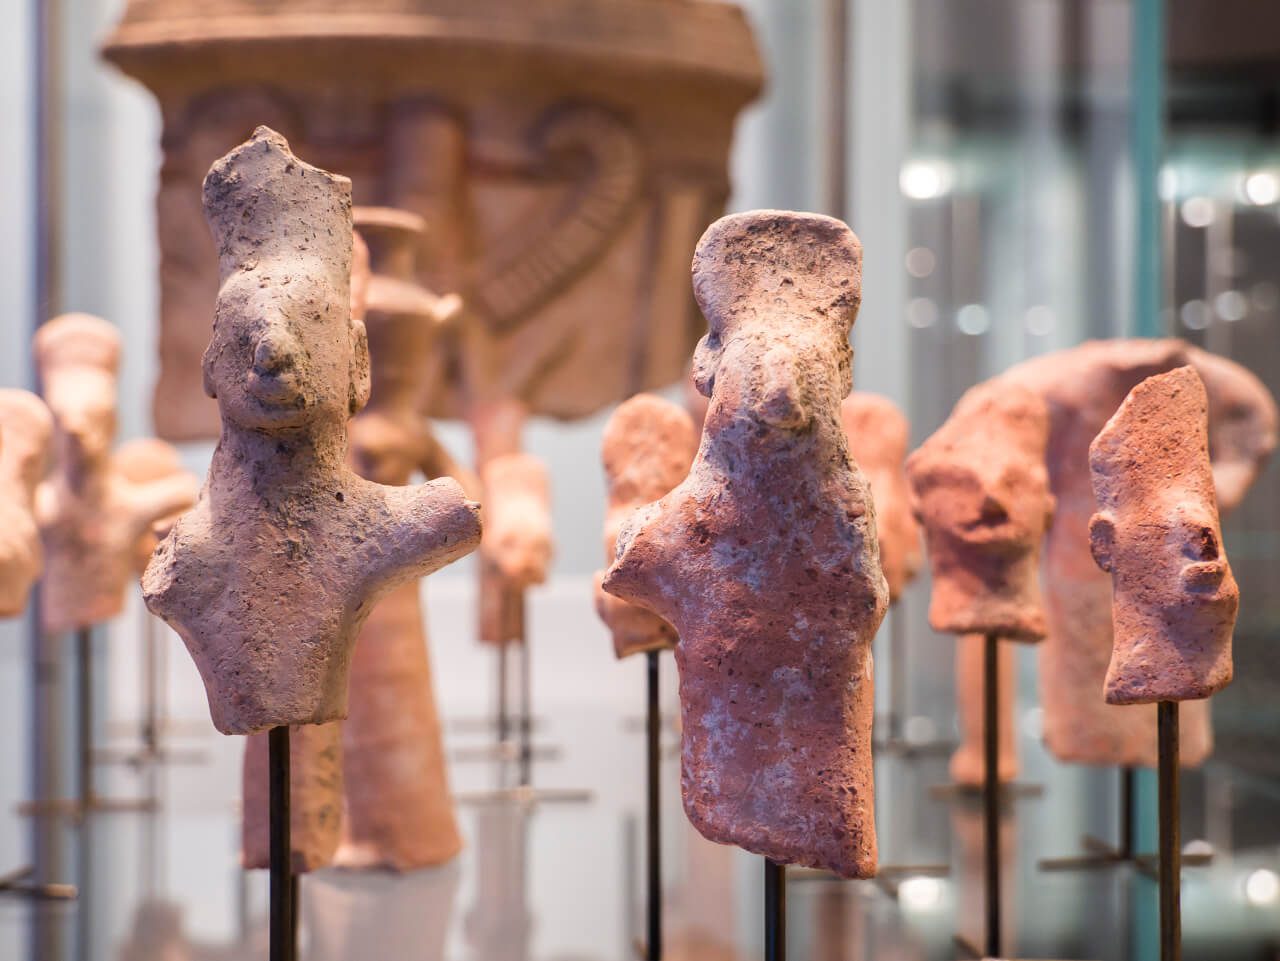 Figurki w zbiorach galerii Glyptotek w Kopenhadze